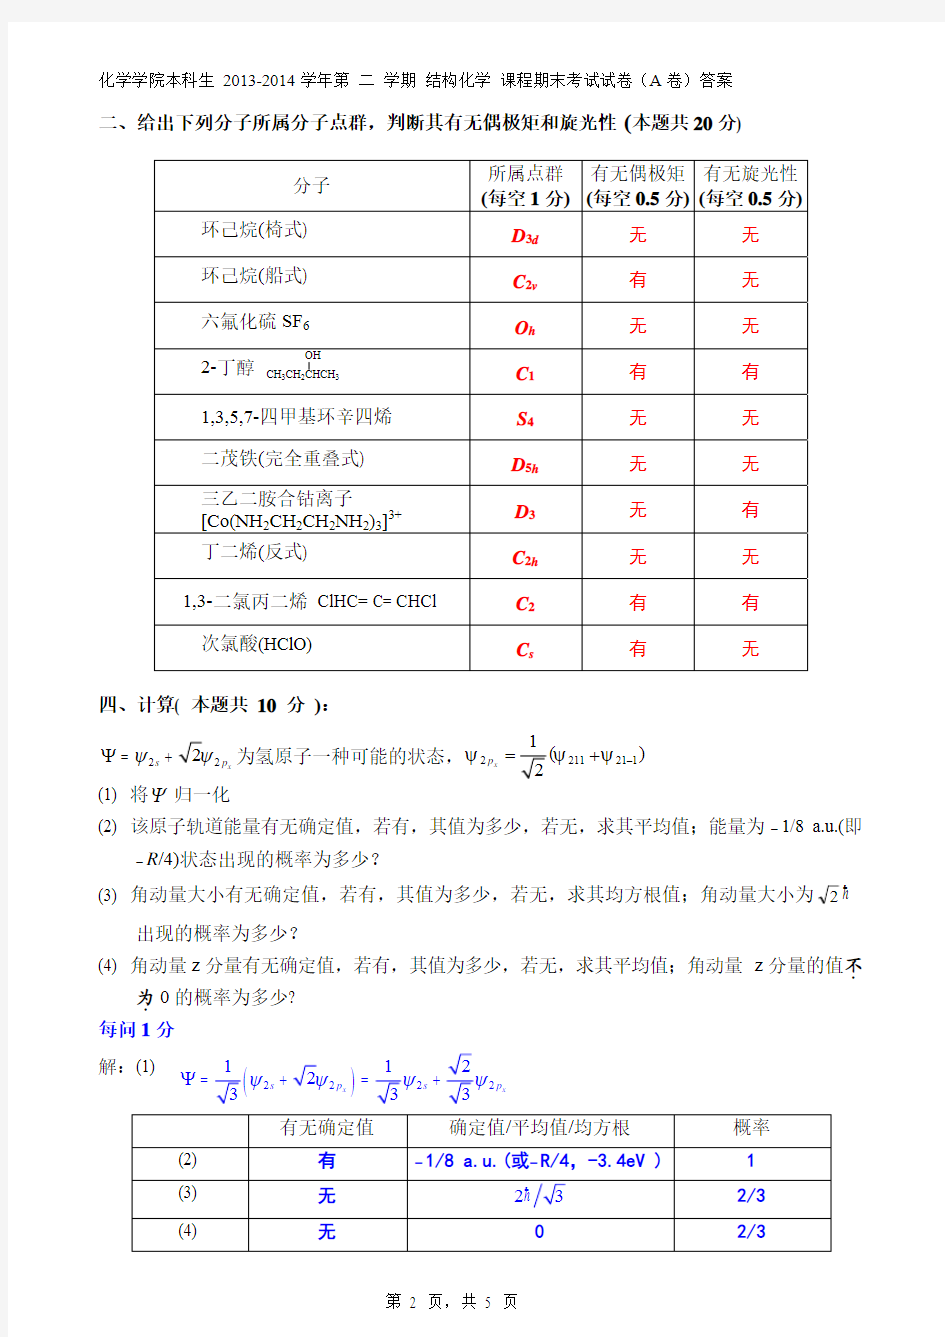 结构化学__南开大学(10)--结构化学期末试卷答案及评分标准-2014